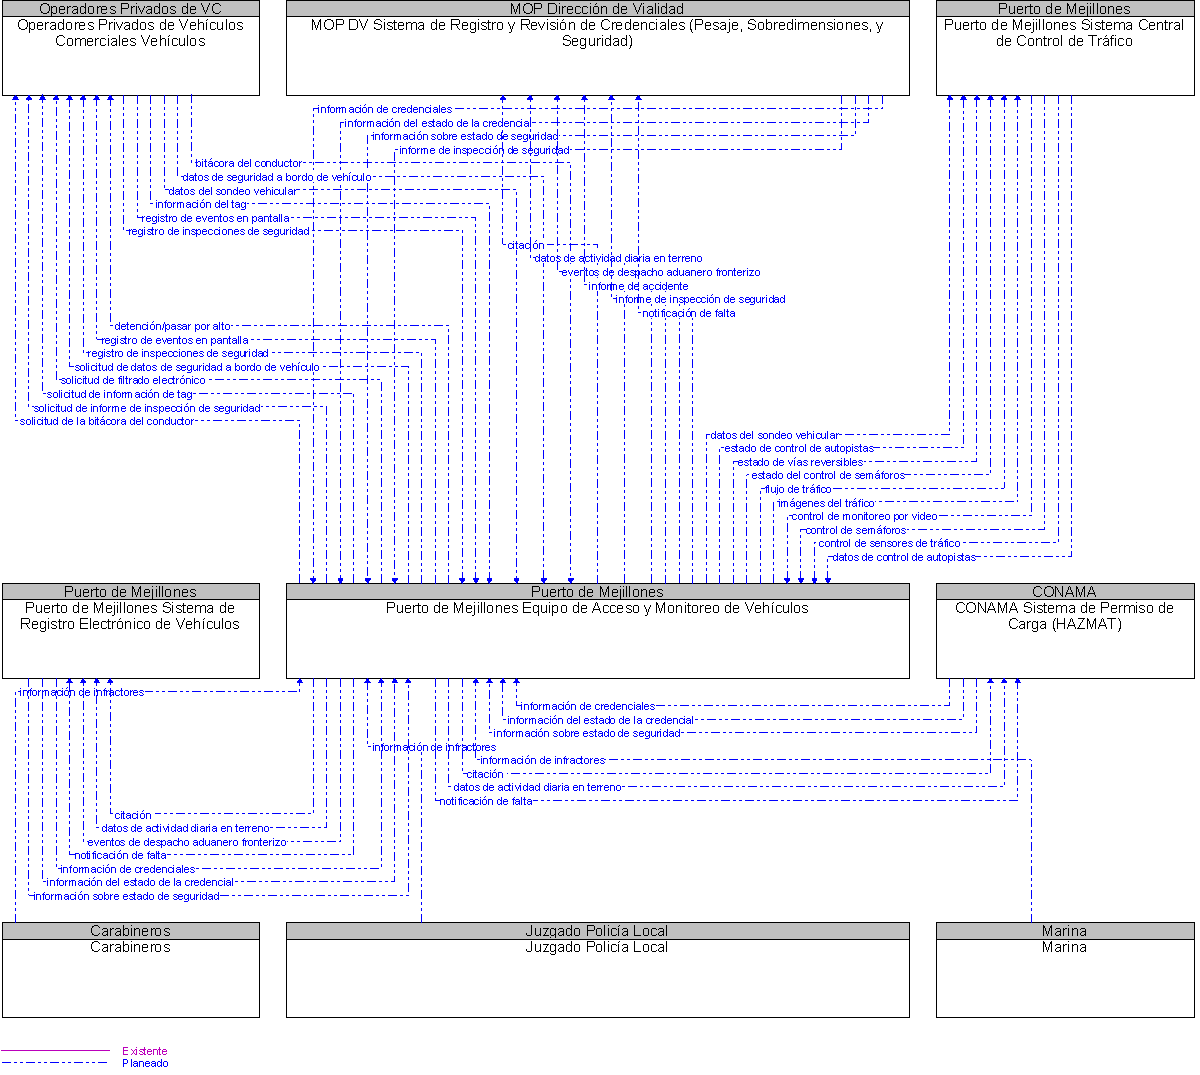 Diagrama Del Contexto por Puerto de Mejillones Equipo de Acceso y Monitoreo de Vehculos